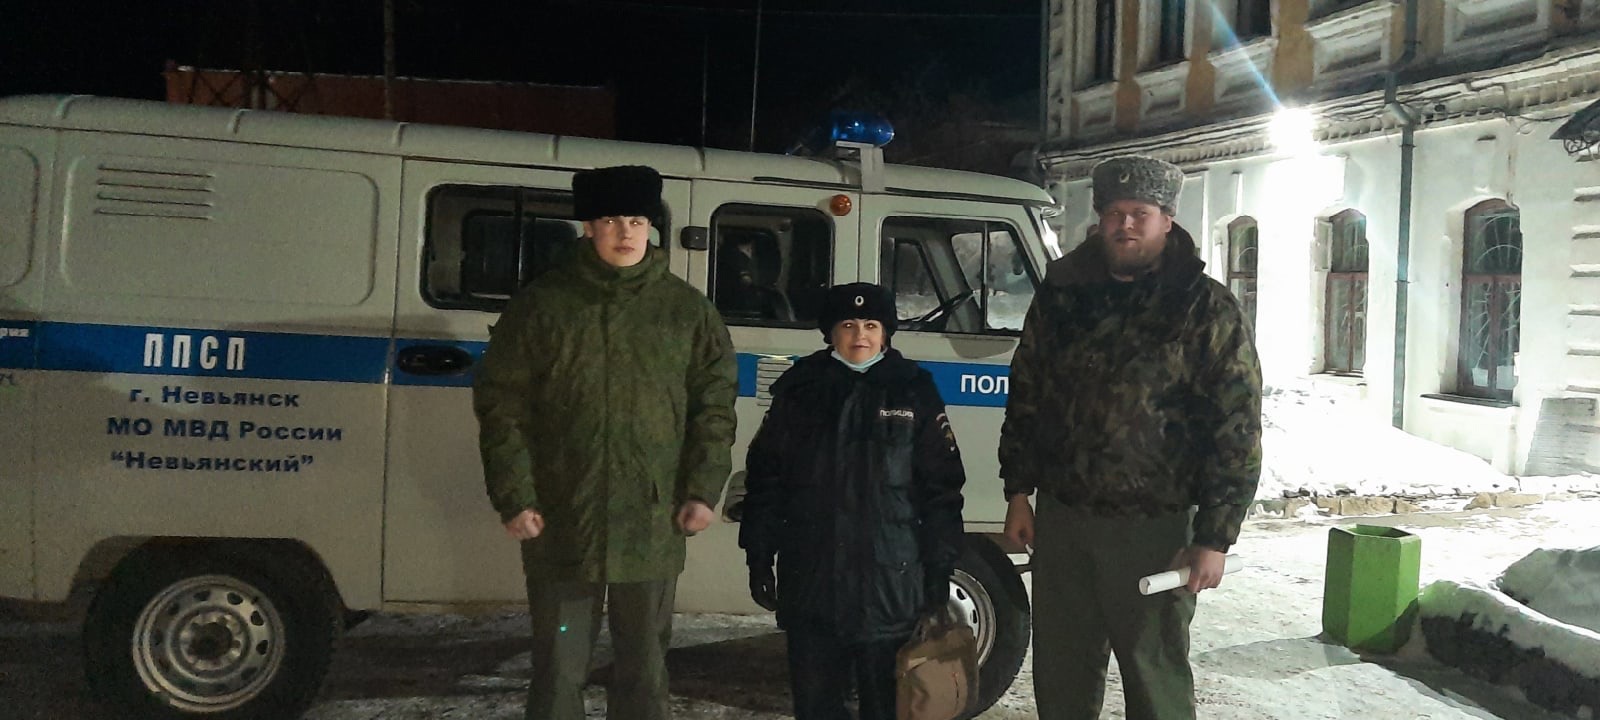 Невьянские казаки оказали помощь полиции в профилактическом мероприятии на улицах ночного города 